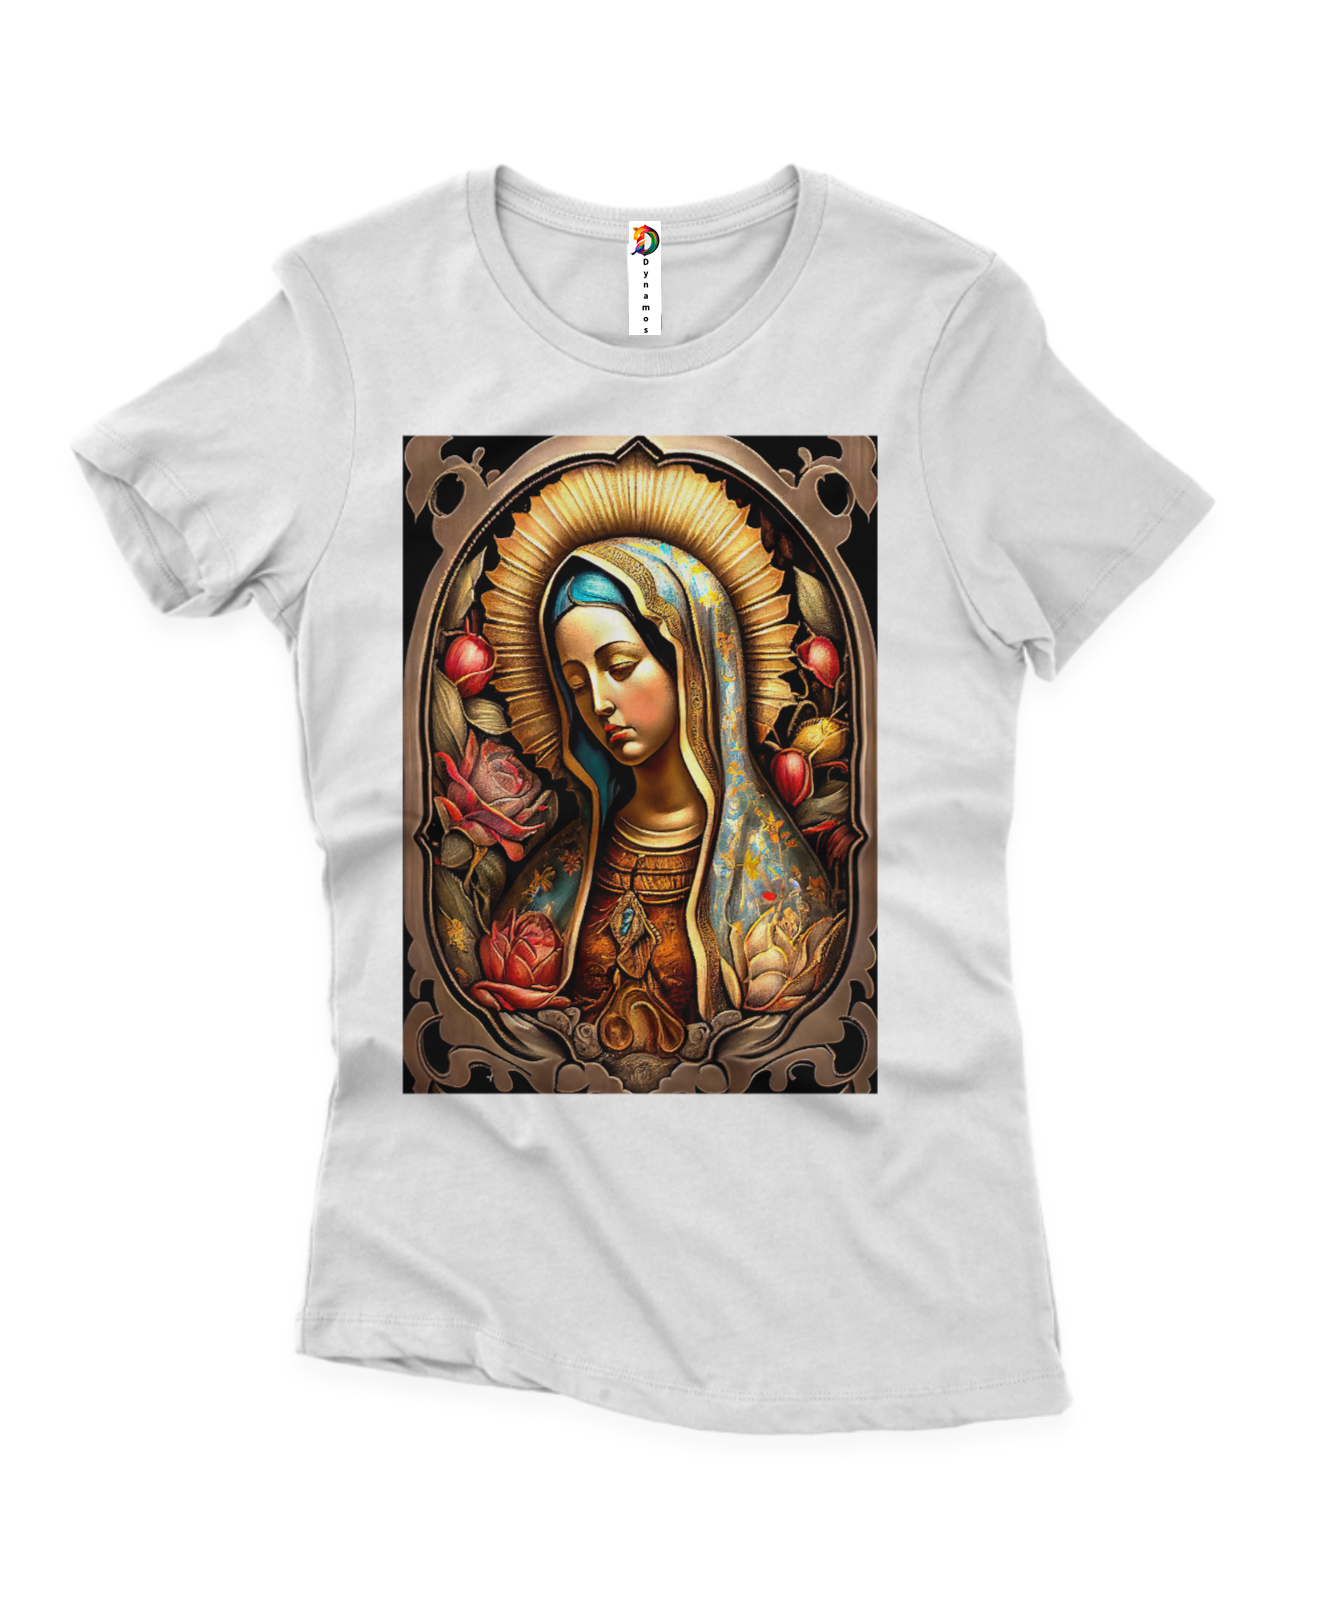 Camiseta Elizete Fem - Nossa Senhora Guadalupe - Algodão Prime e Quality